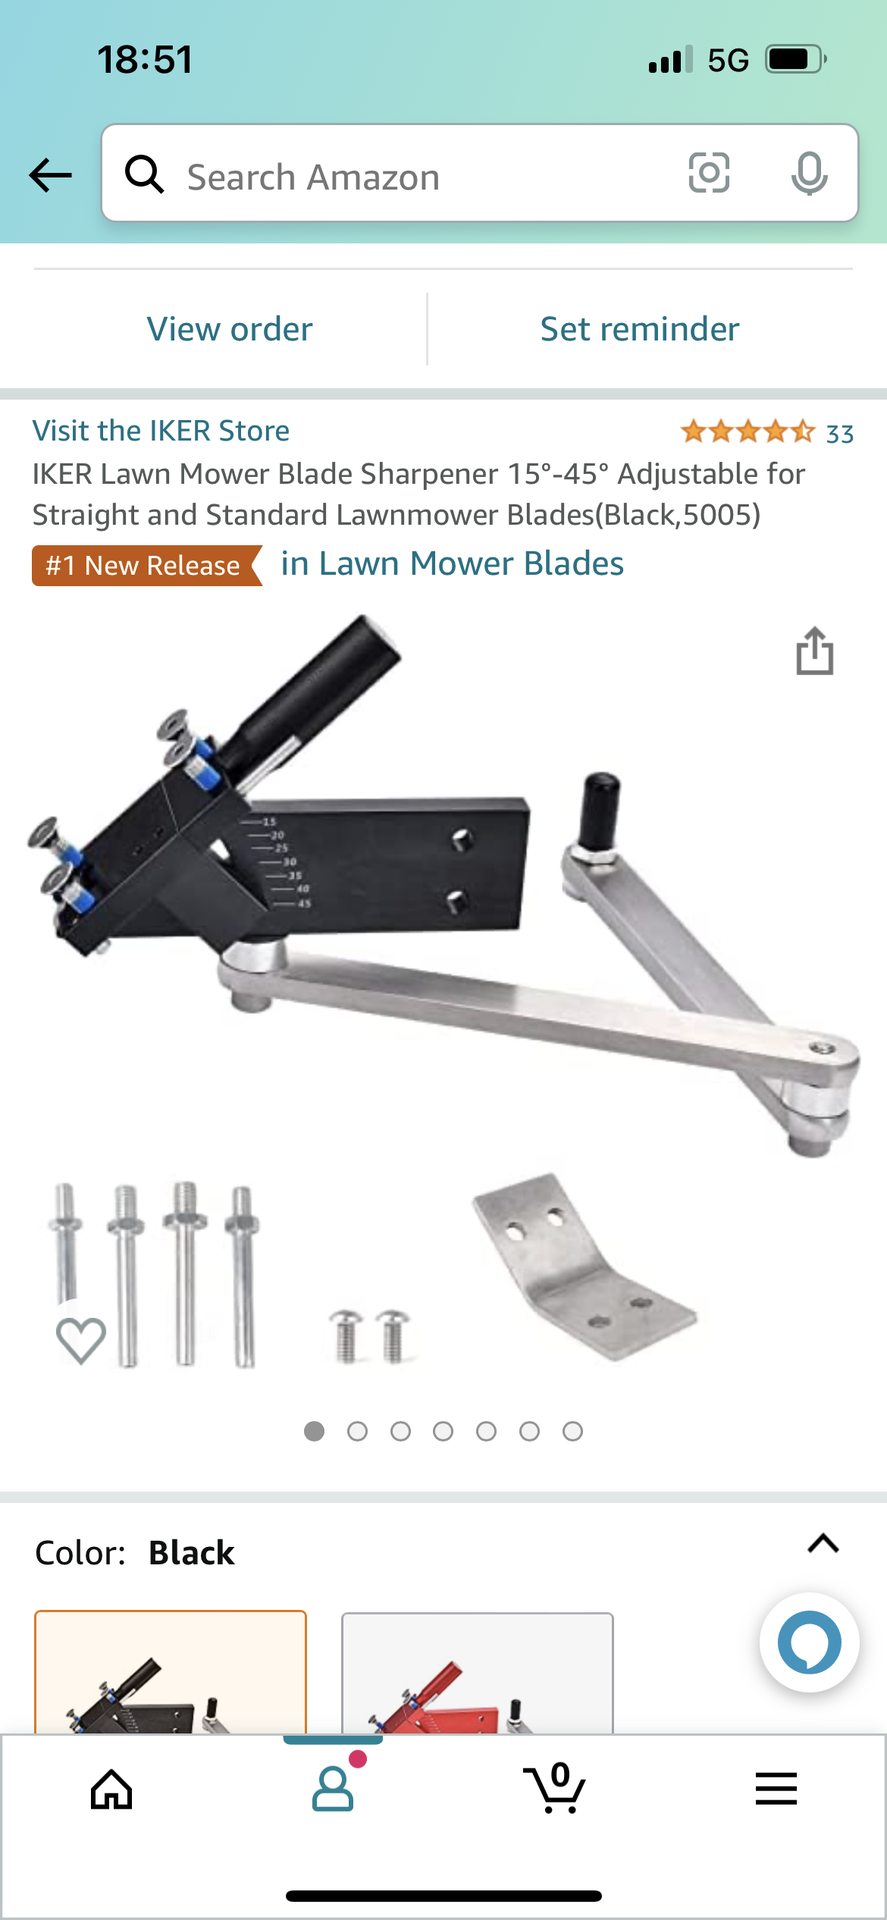 All American sharpener vs IKER? For sharpening